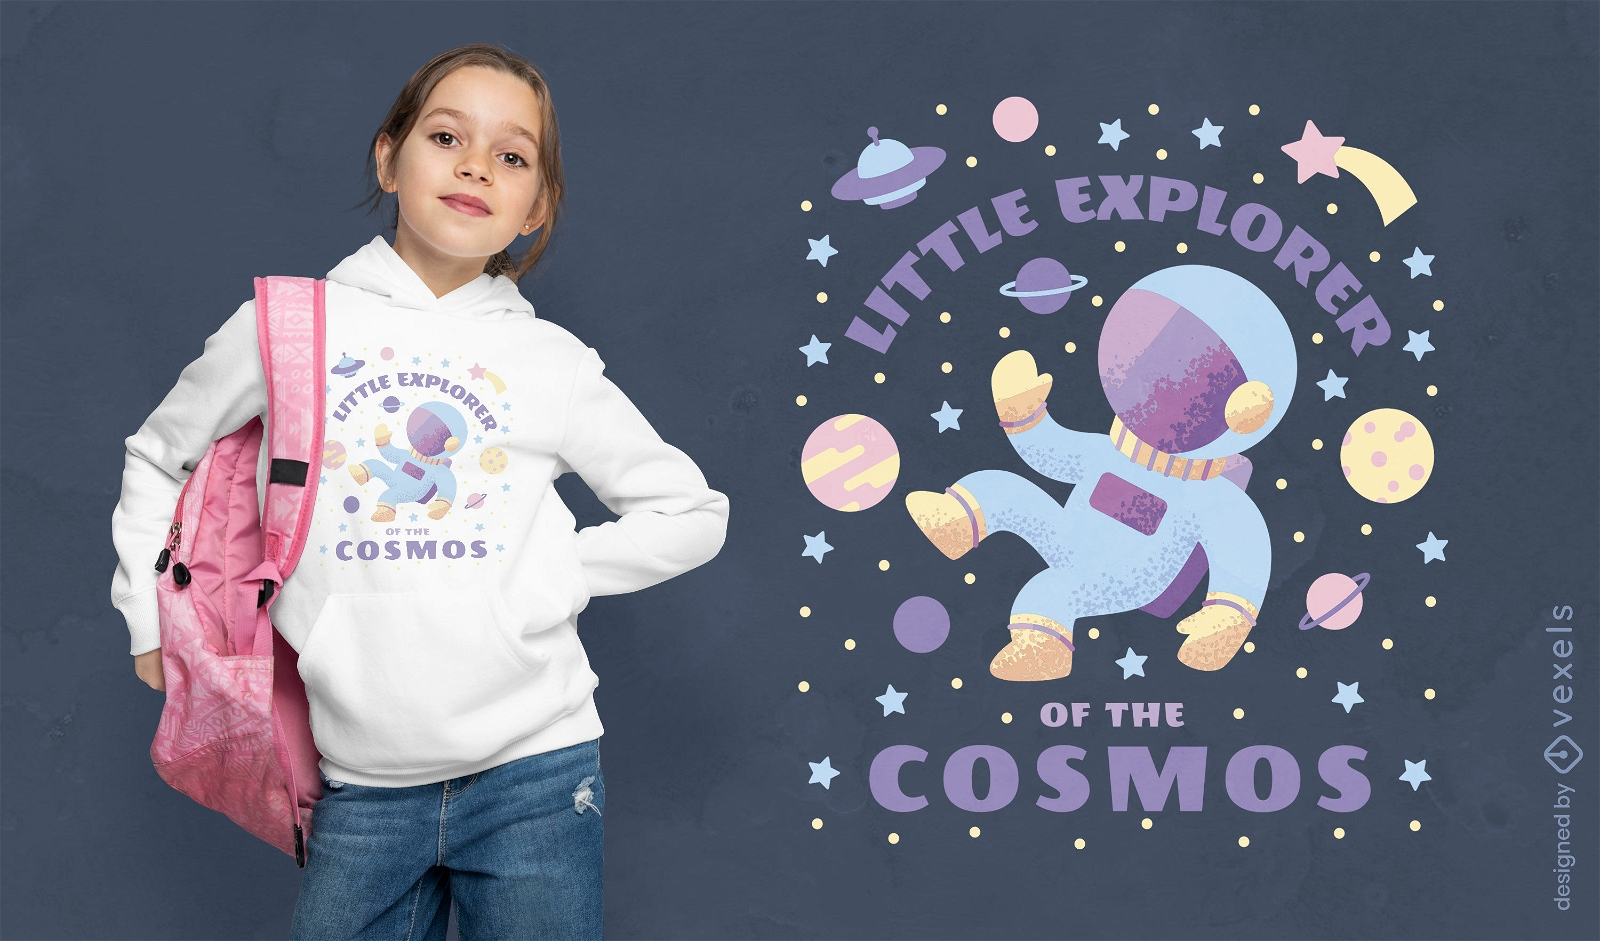 Diseño de camiseta pequeño explorador cósmico.